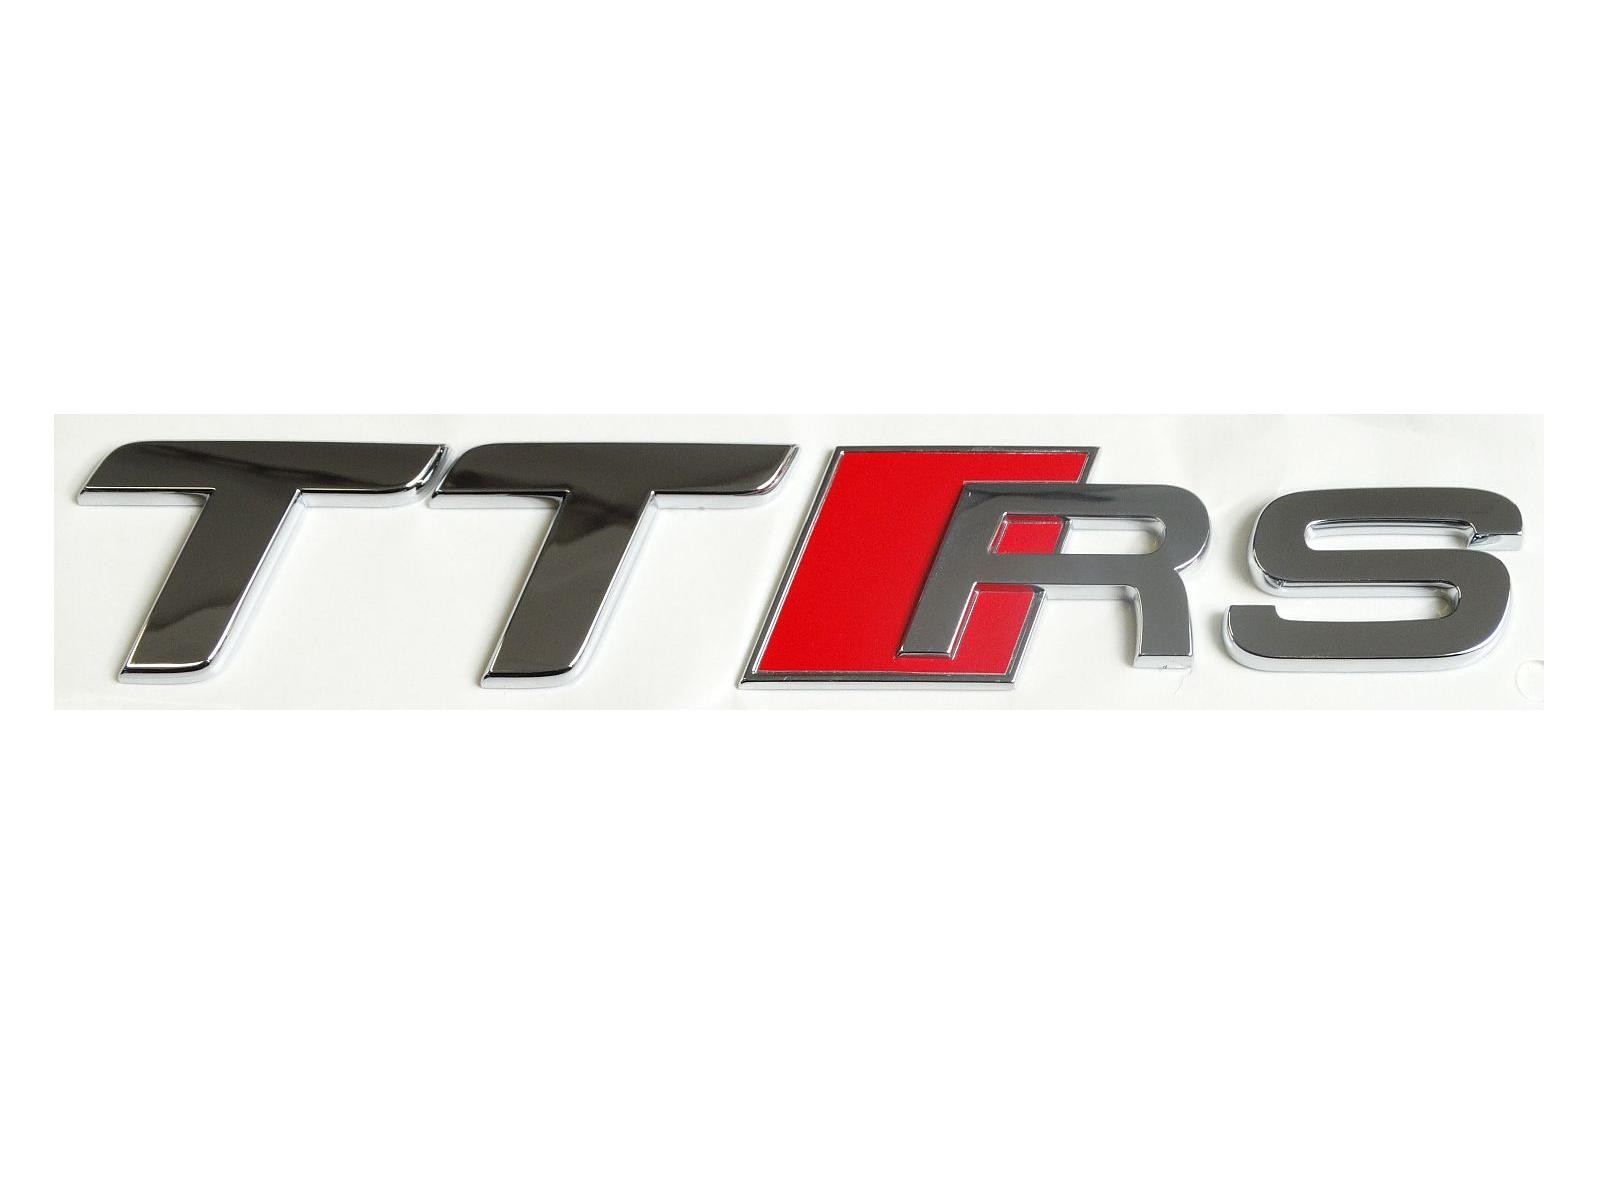 Audi TTRS Schriftzug Emblem Logo selbstklebend 